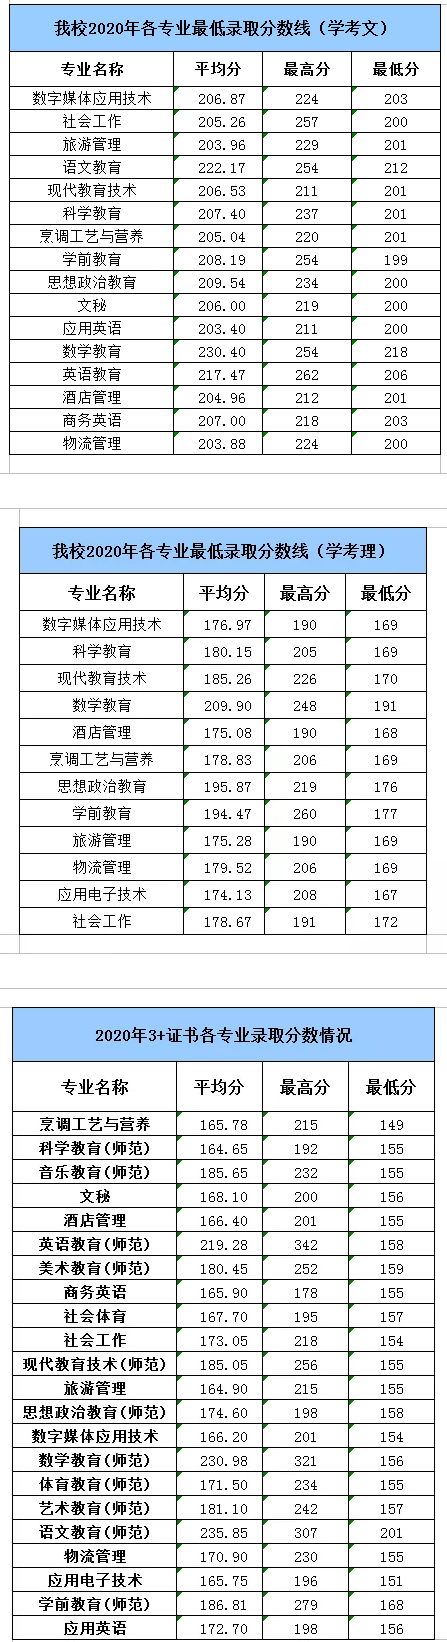 2021湛江幼儿师范专科学校春季高考分数线